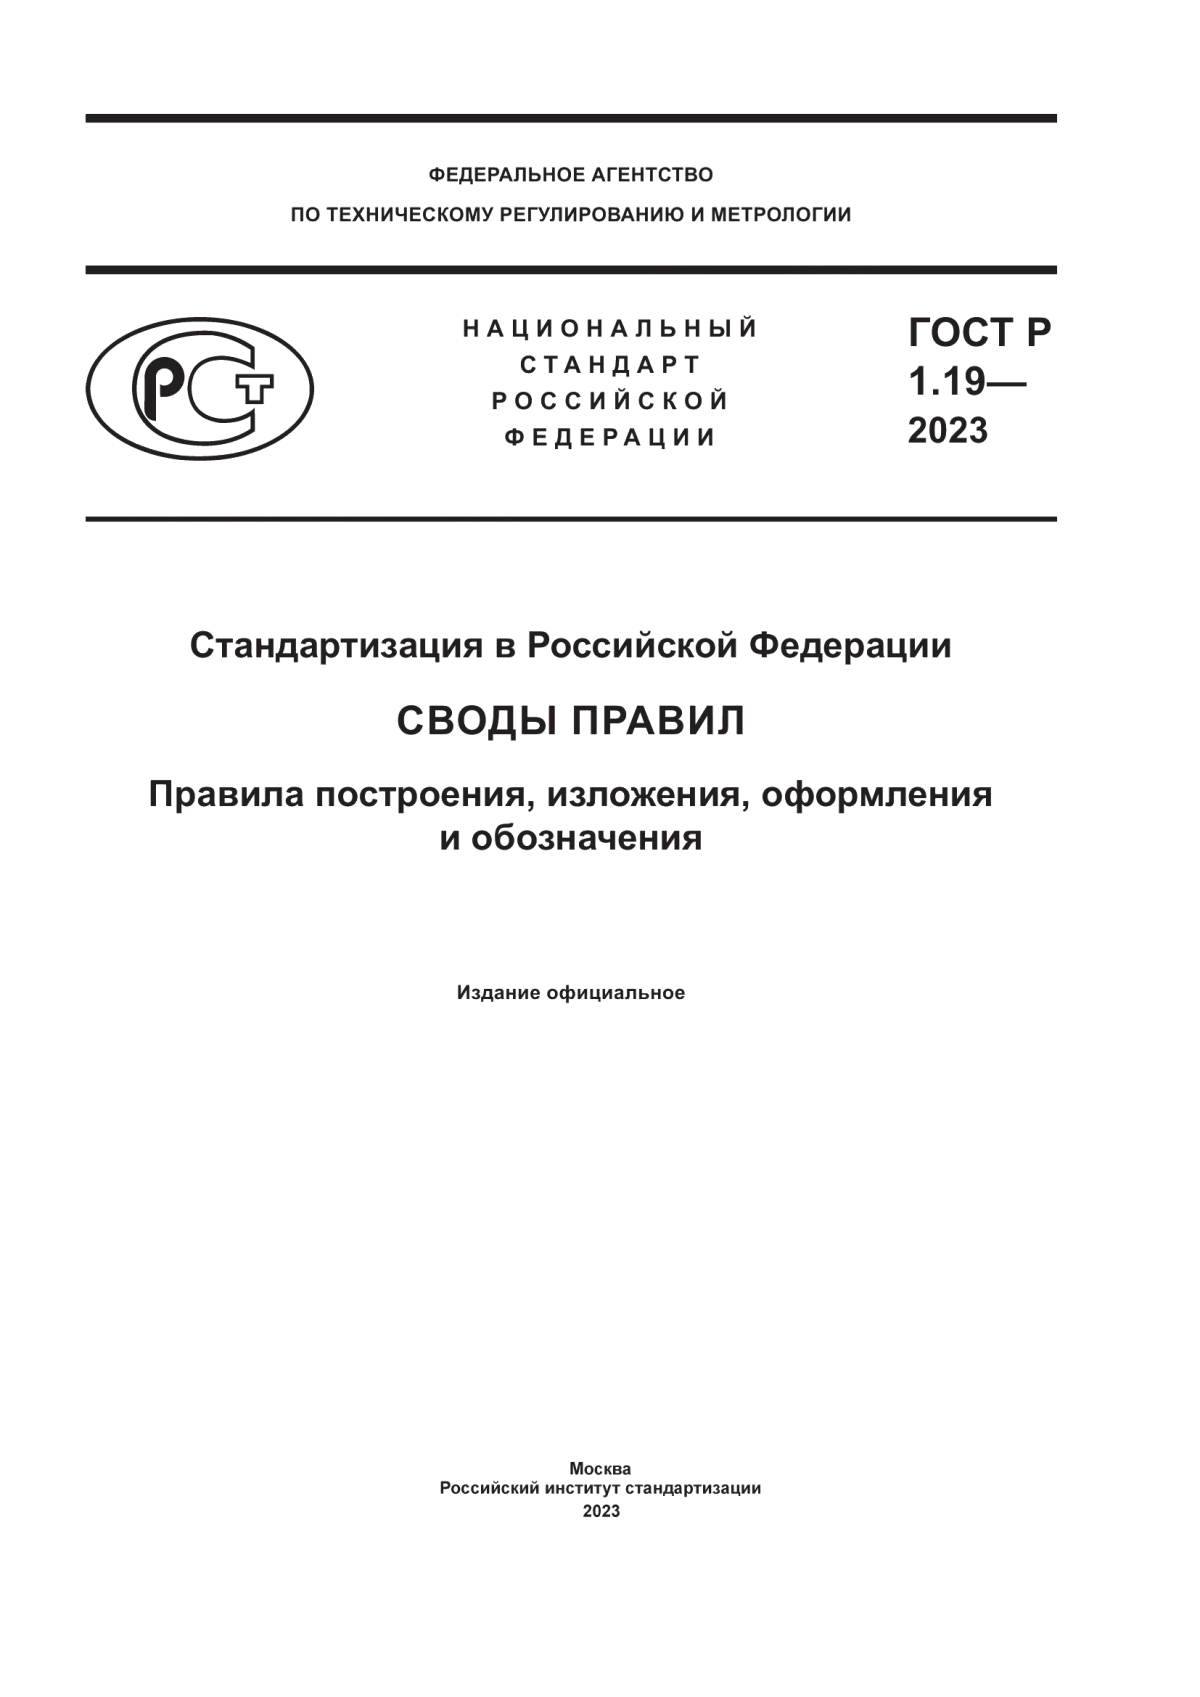 ГОСТ Р 1.19-2023 Стандартизация в Российской Федерации. Своды правил. Правила построения, изложения, оформления и обозначения